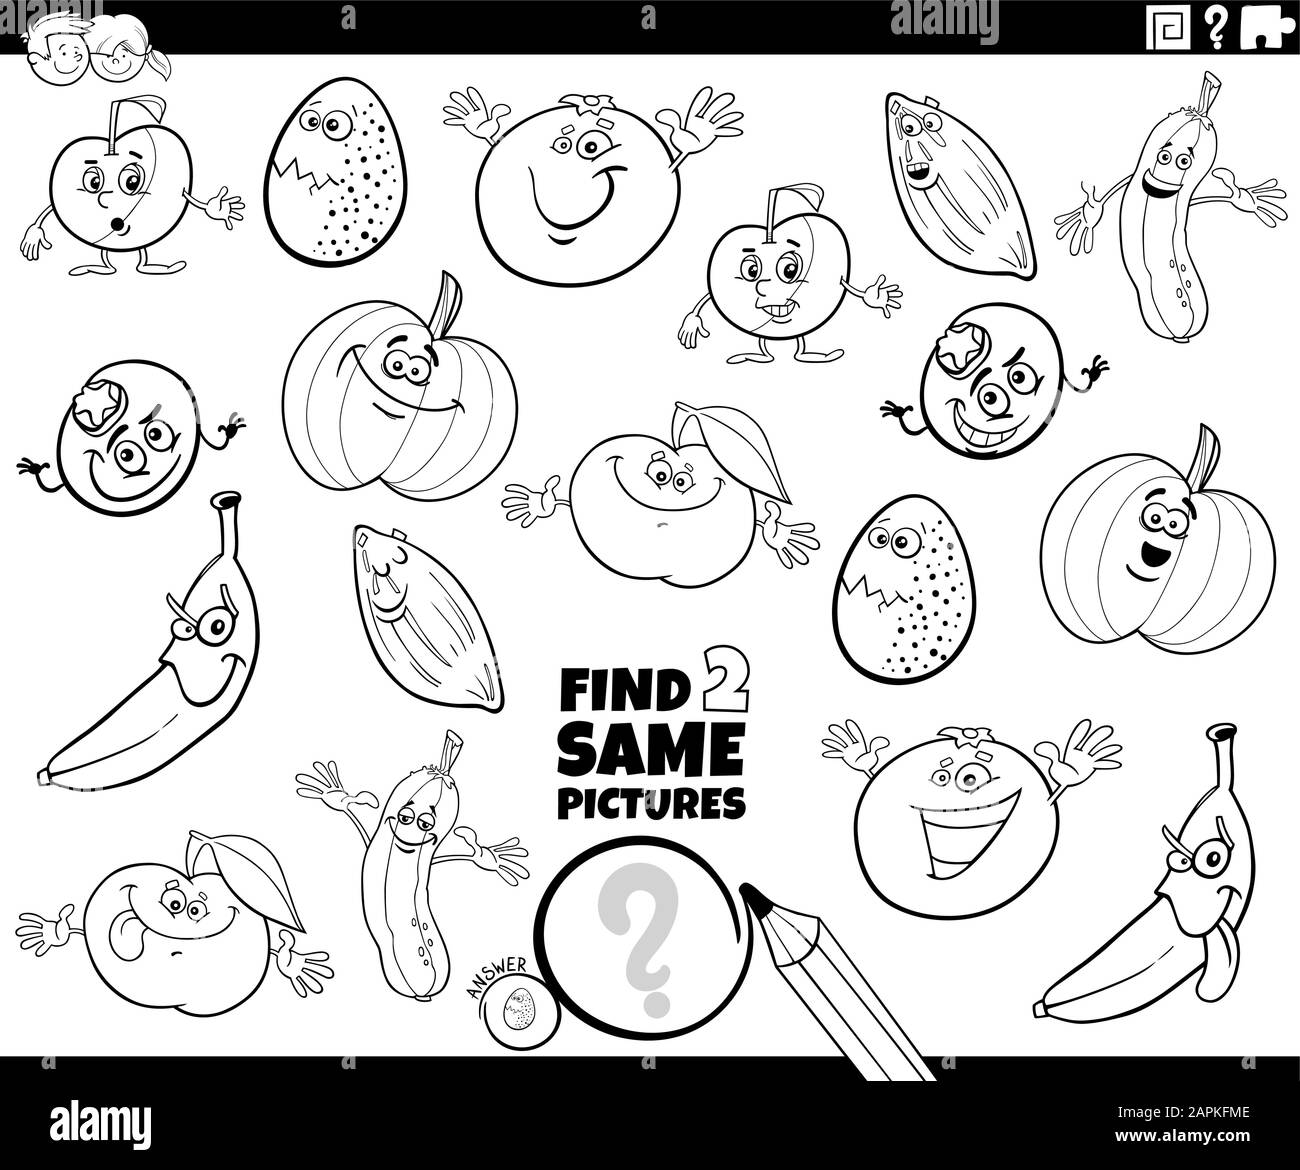 Black and White Cartoon Illustration de Trouver Deux mêmes images activité éducative jeu pour enfants avec Légumes et Fruits et Caractère alimentaire Illustration de Vecteur